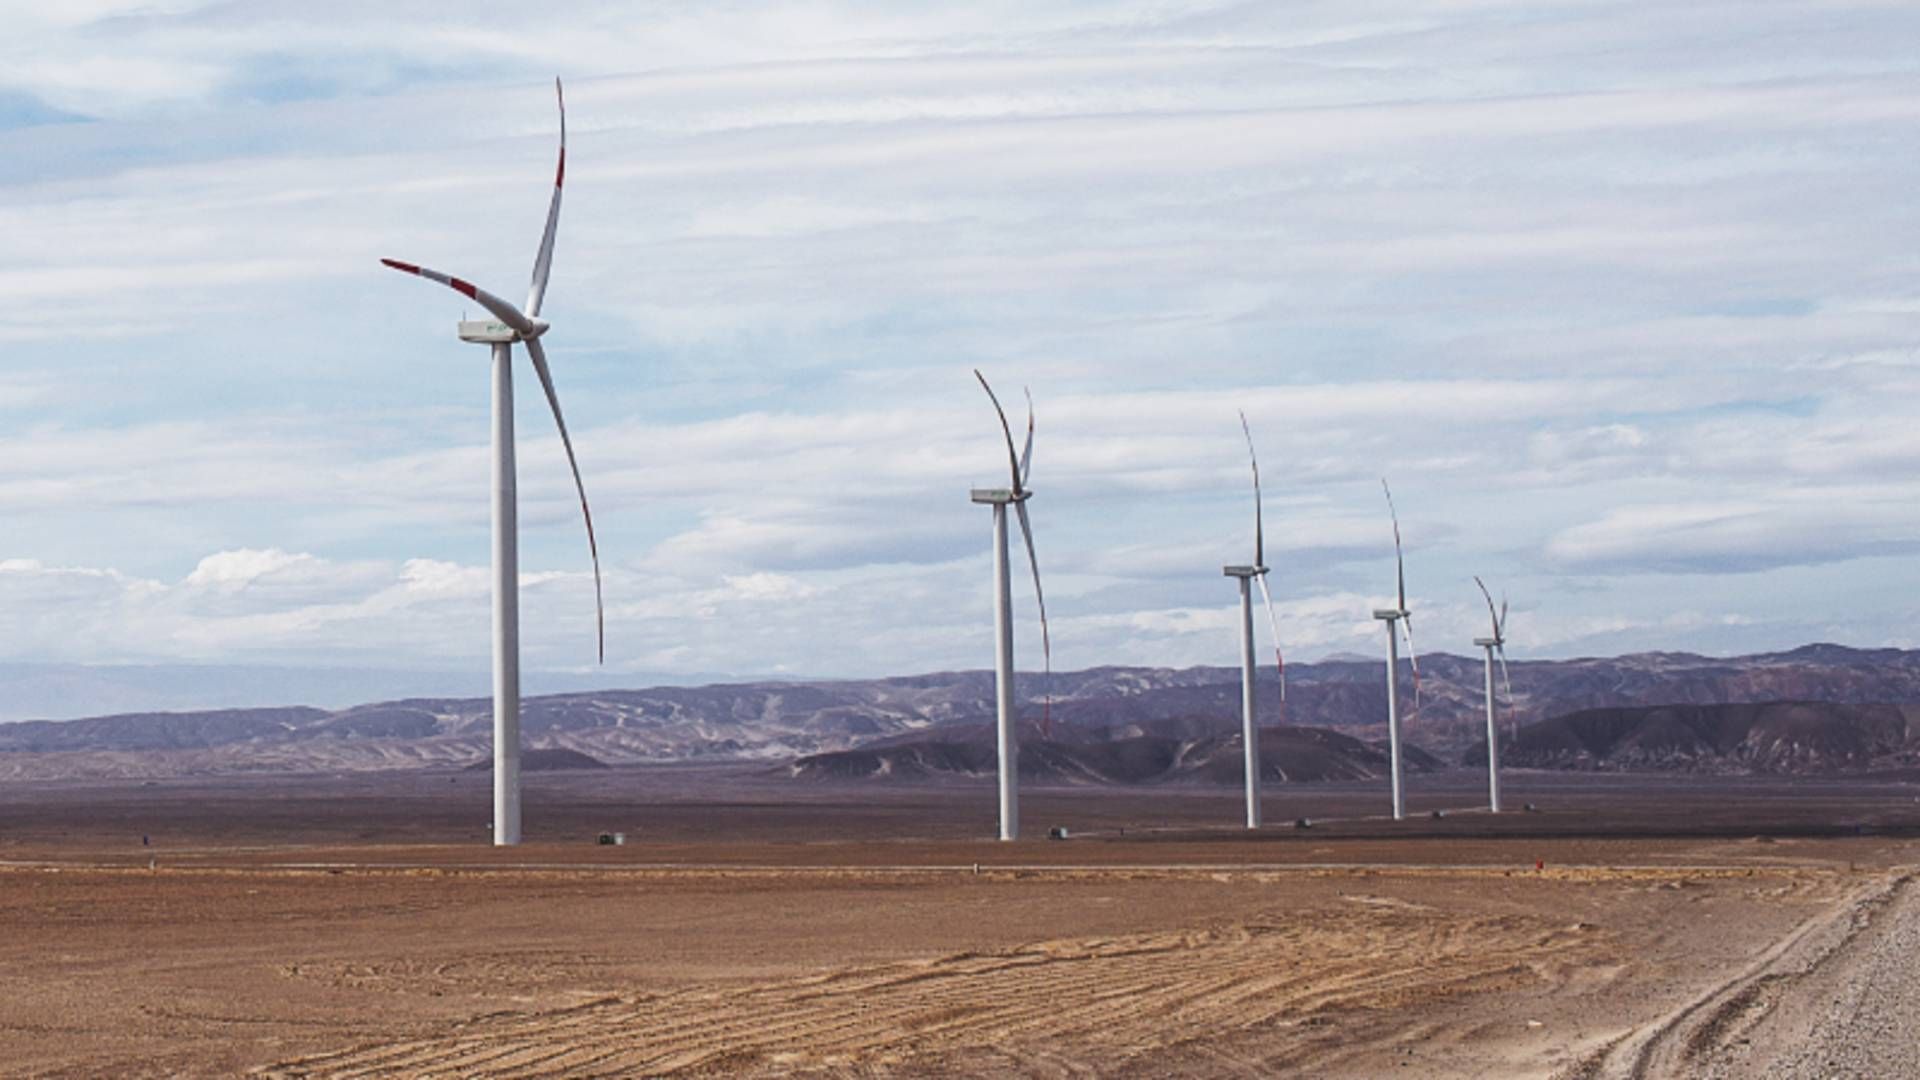 Enels vindmøller i nabolandet Peru. | Foto: Enel